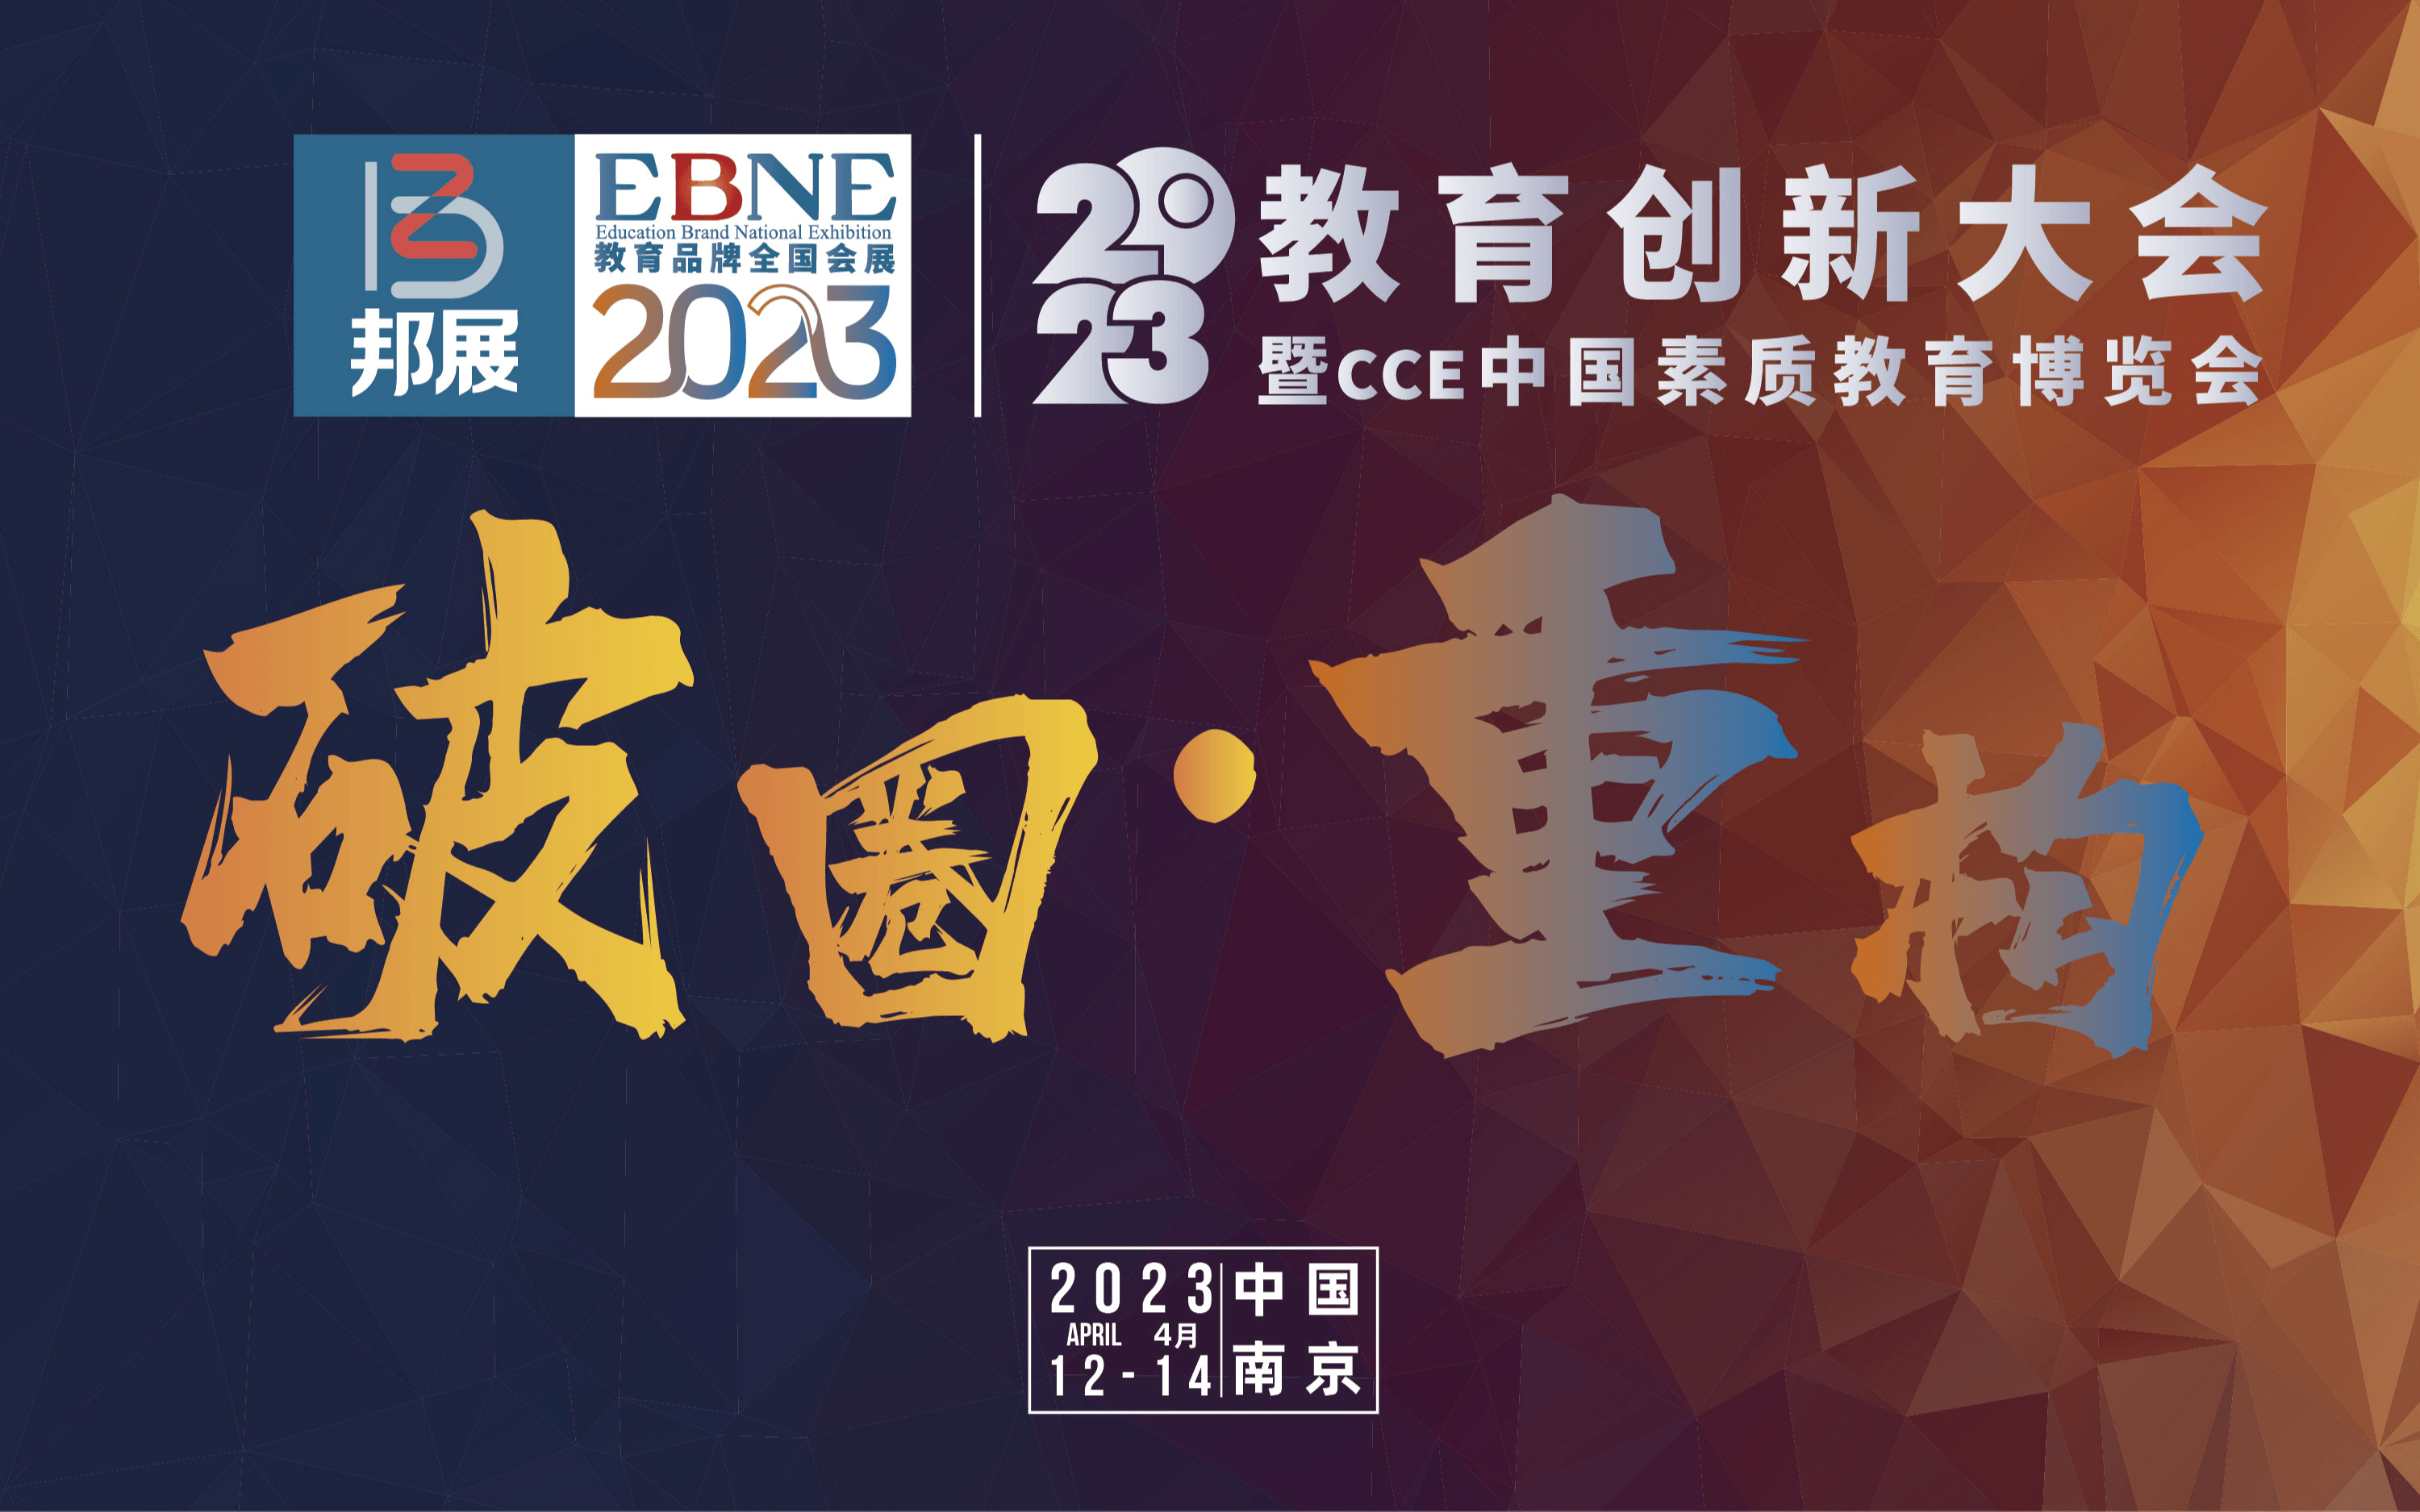 2023教育创新大会暨CCE中国素质教育博览会